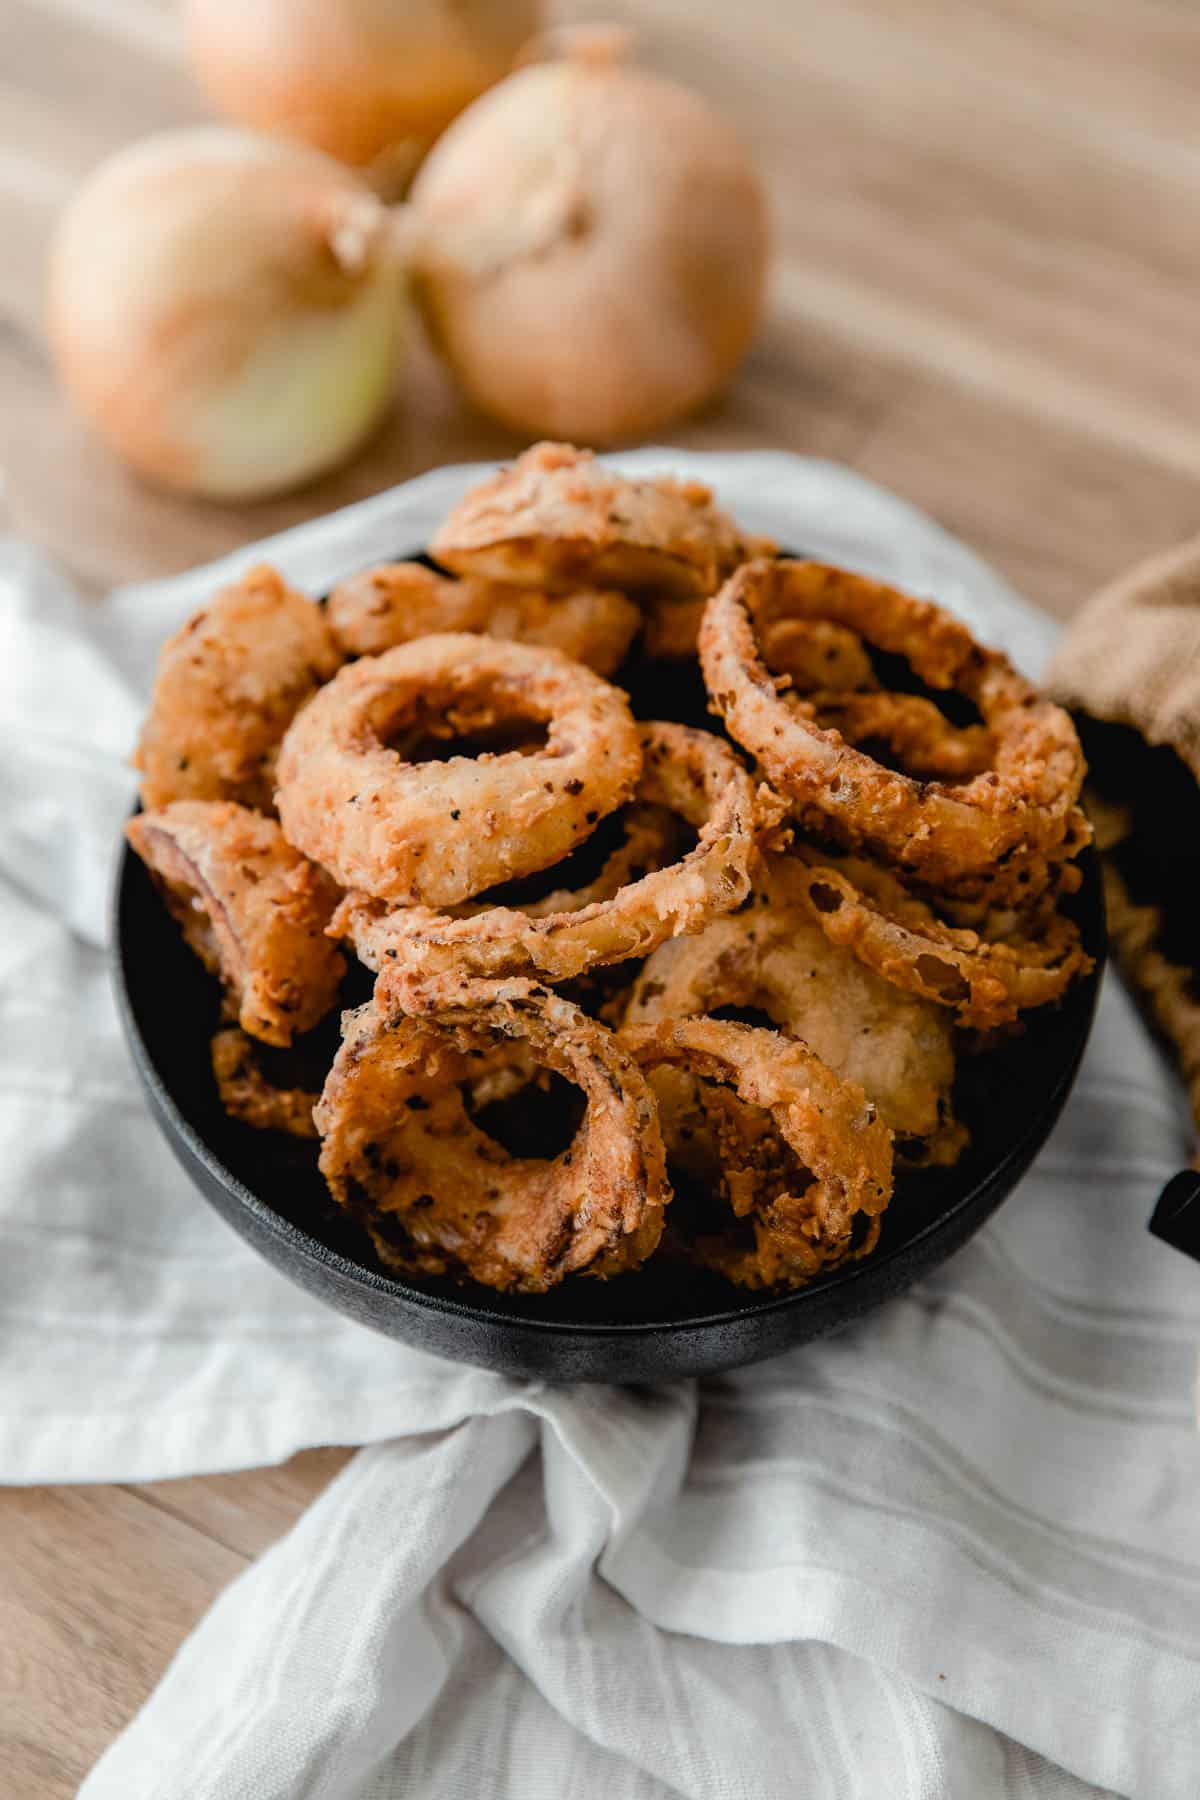 Best Sourdough Onion Rings - Easy Discard Recipe